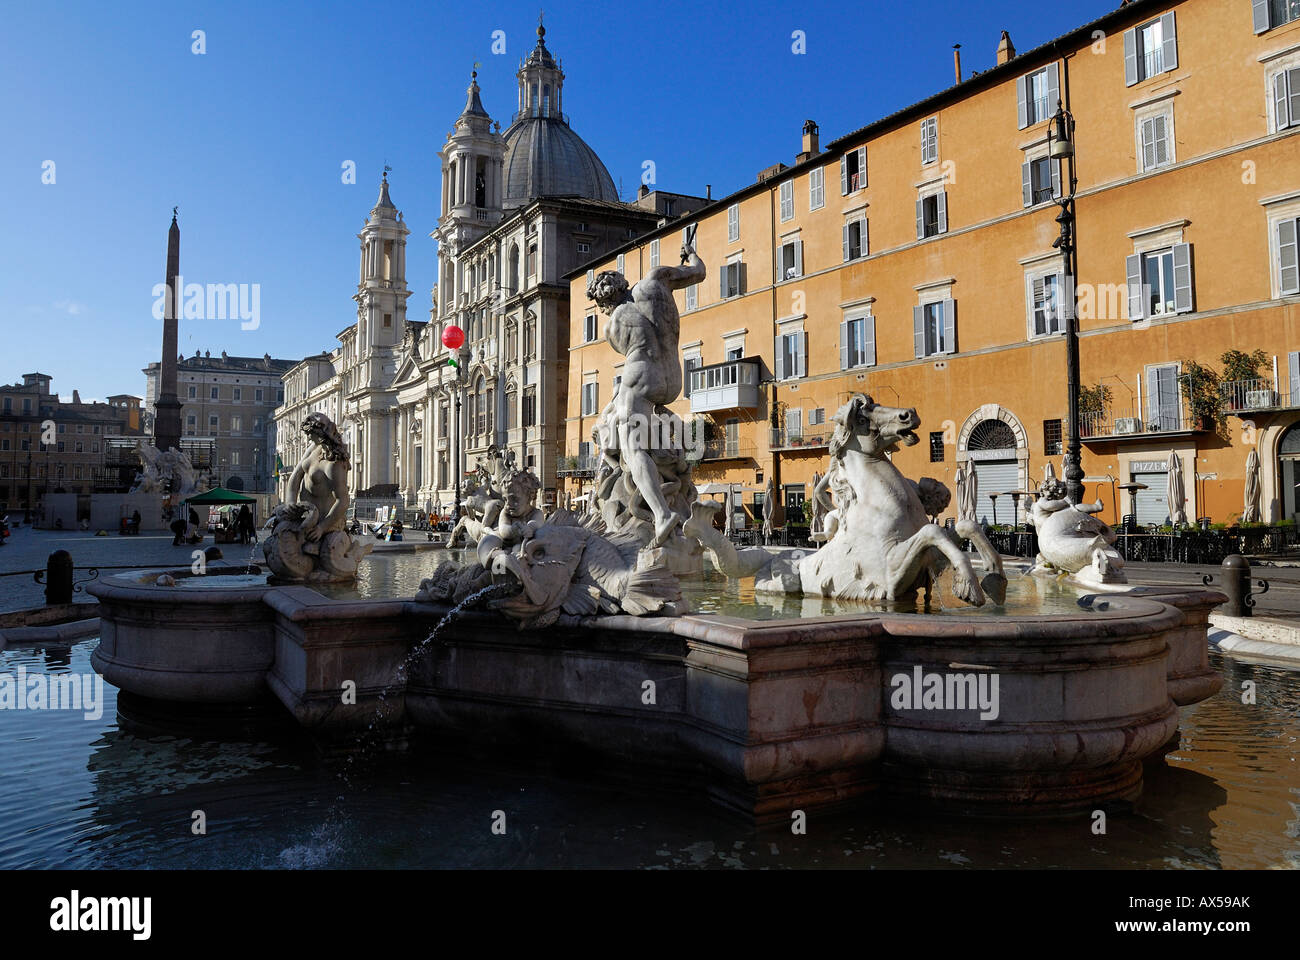 Fontaine de Neptune dans une place Navone à Rome - Italie Banque D'Images